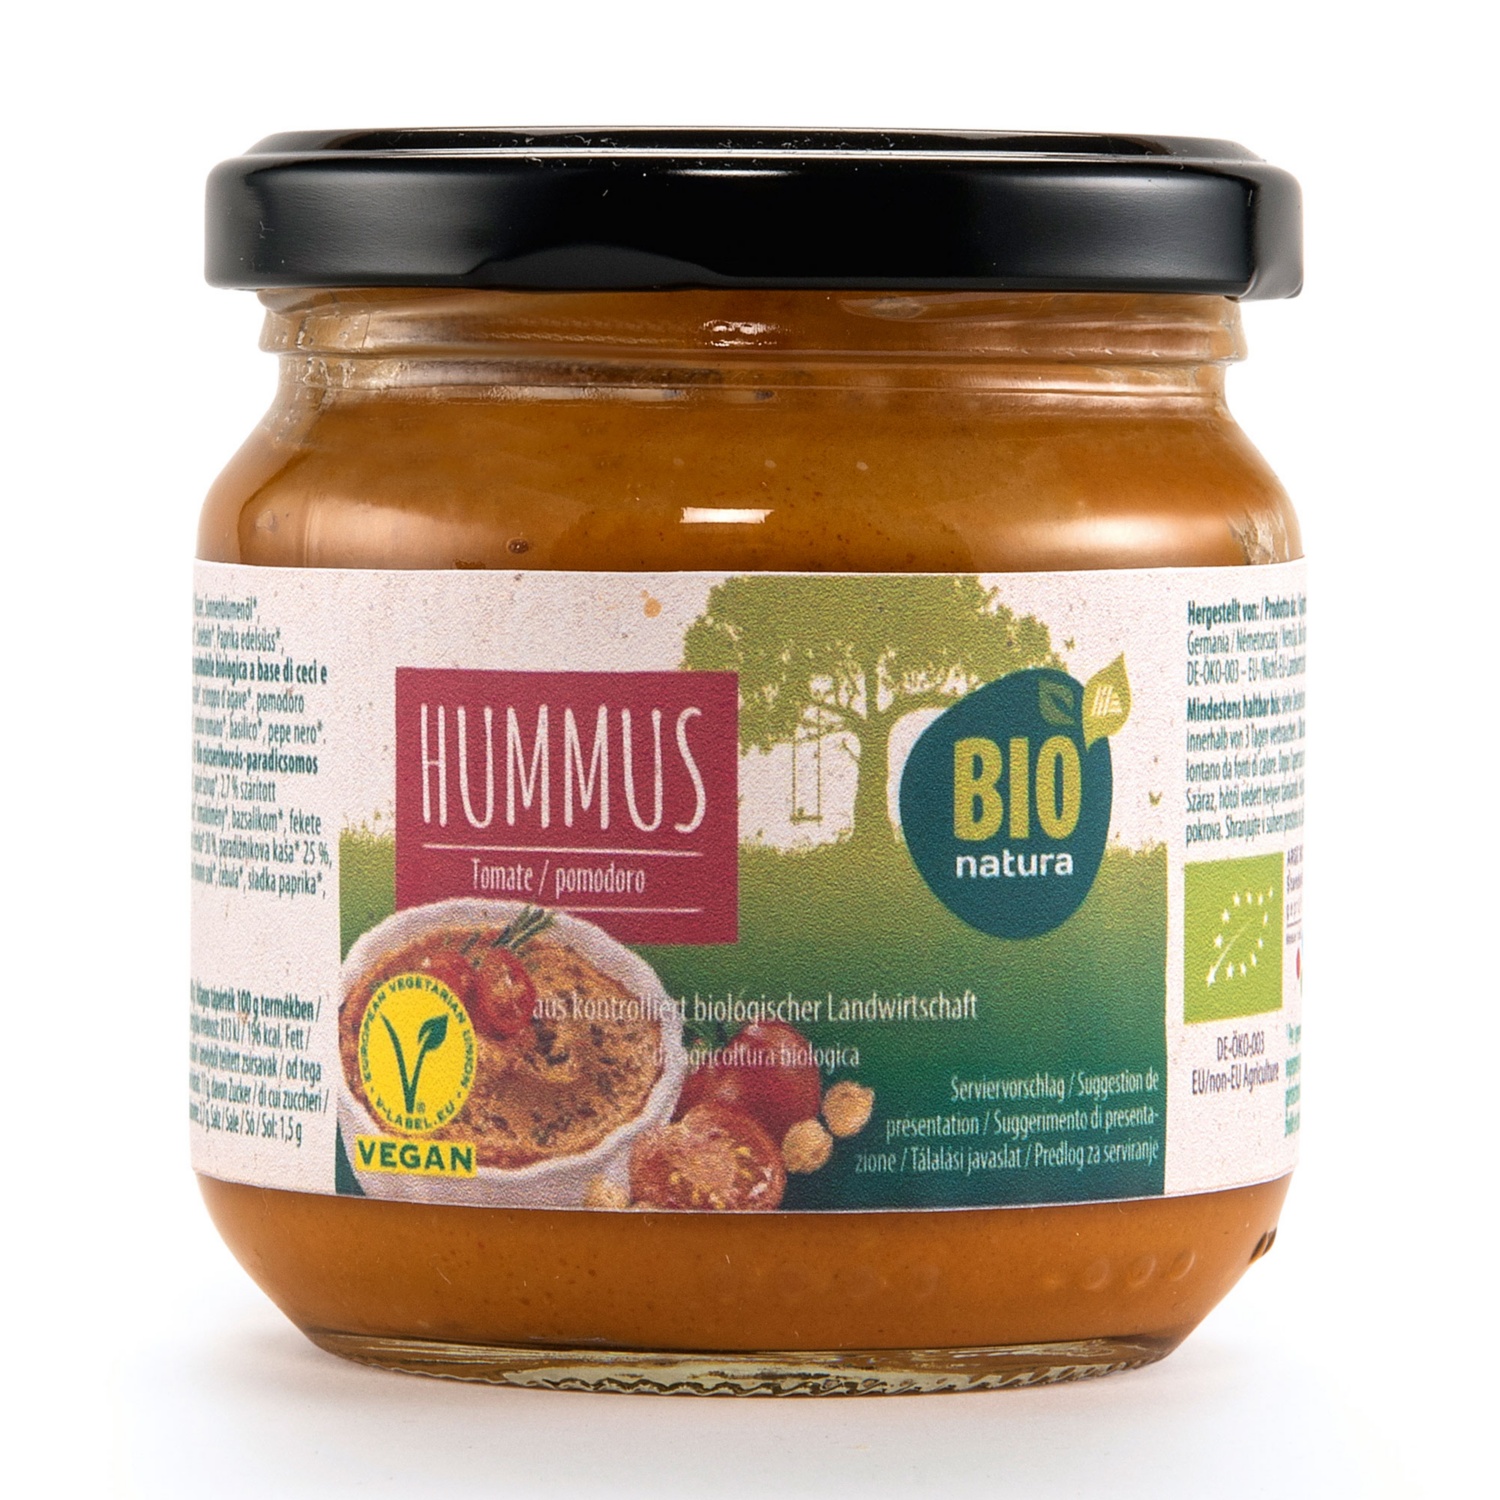 BIO NATURA Bio Hummus, Tomate